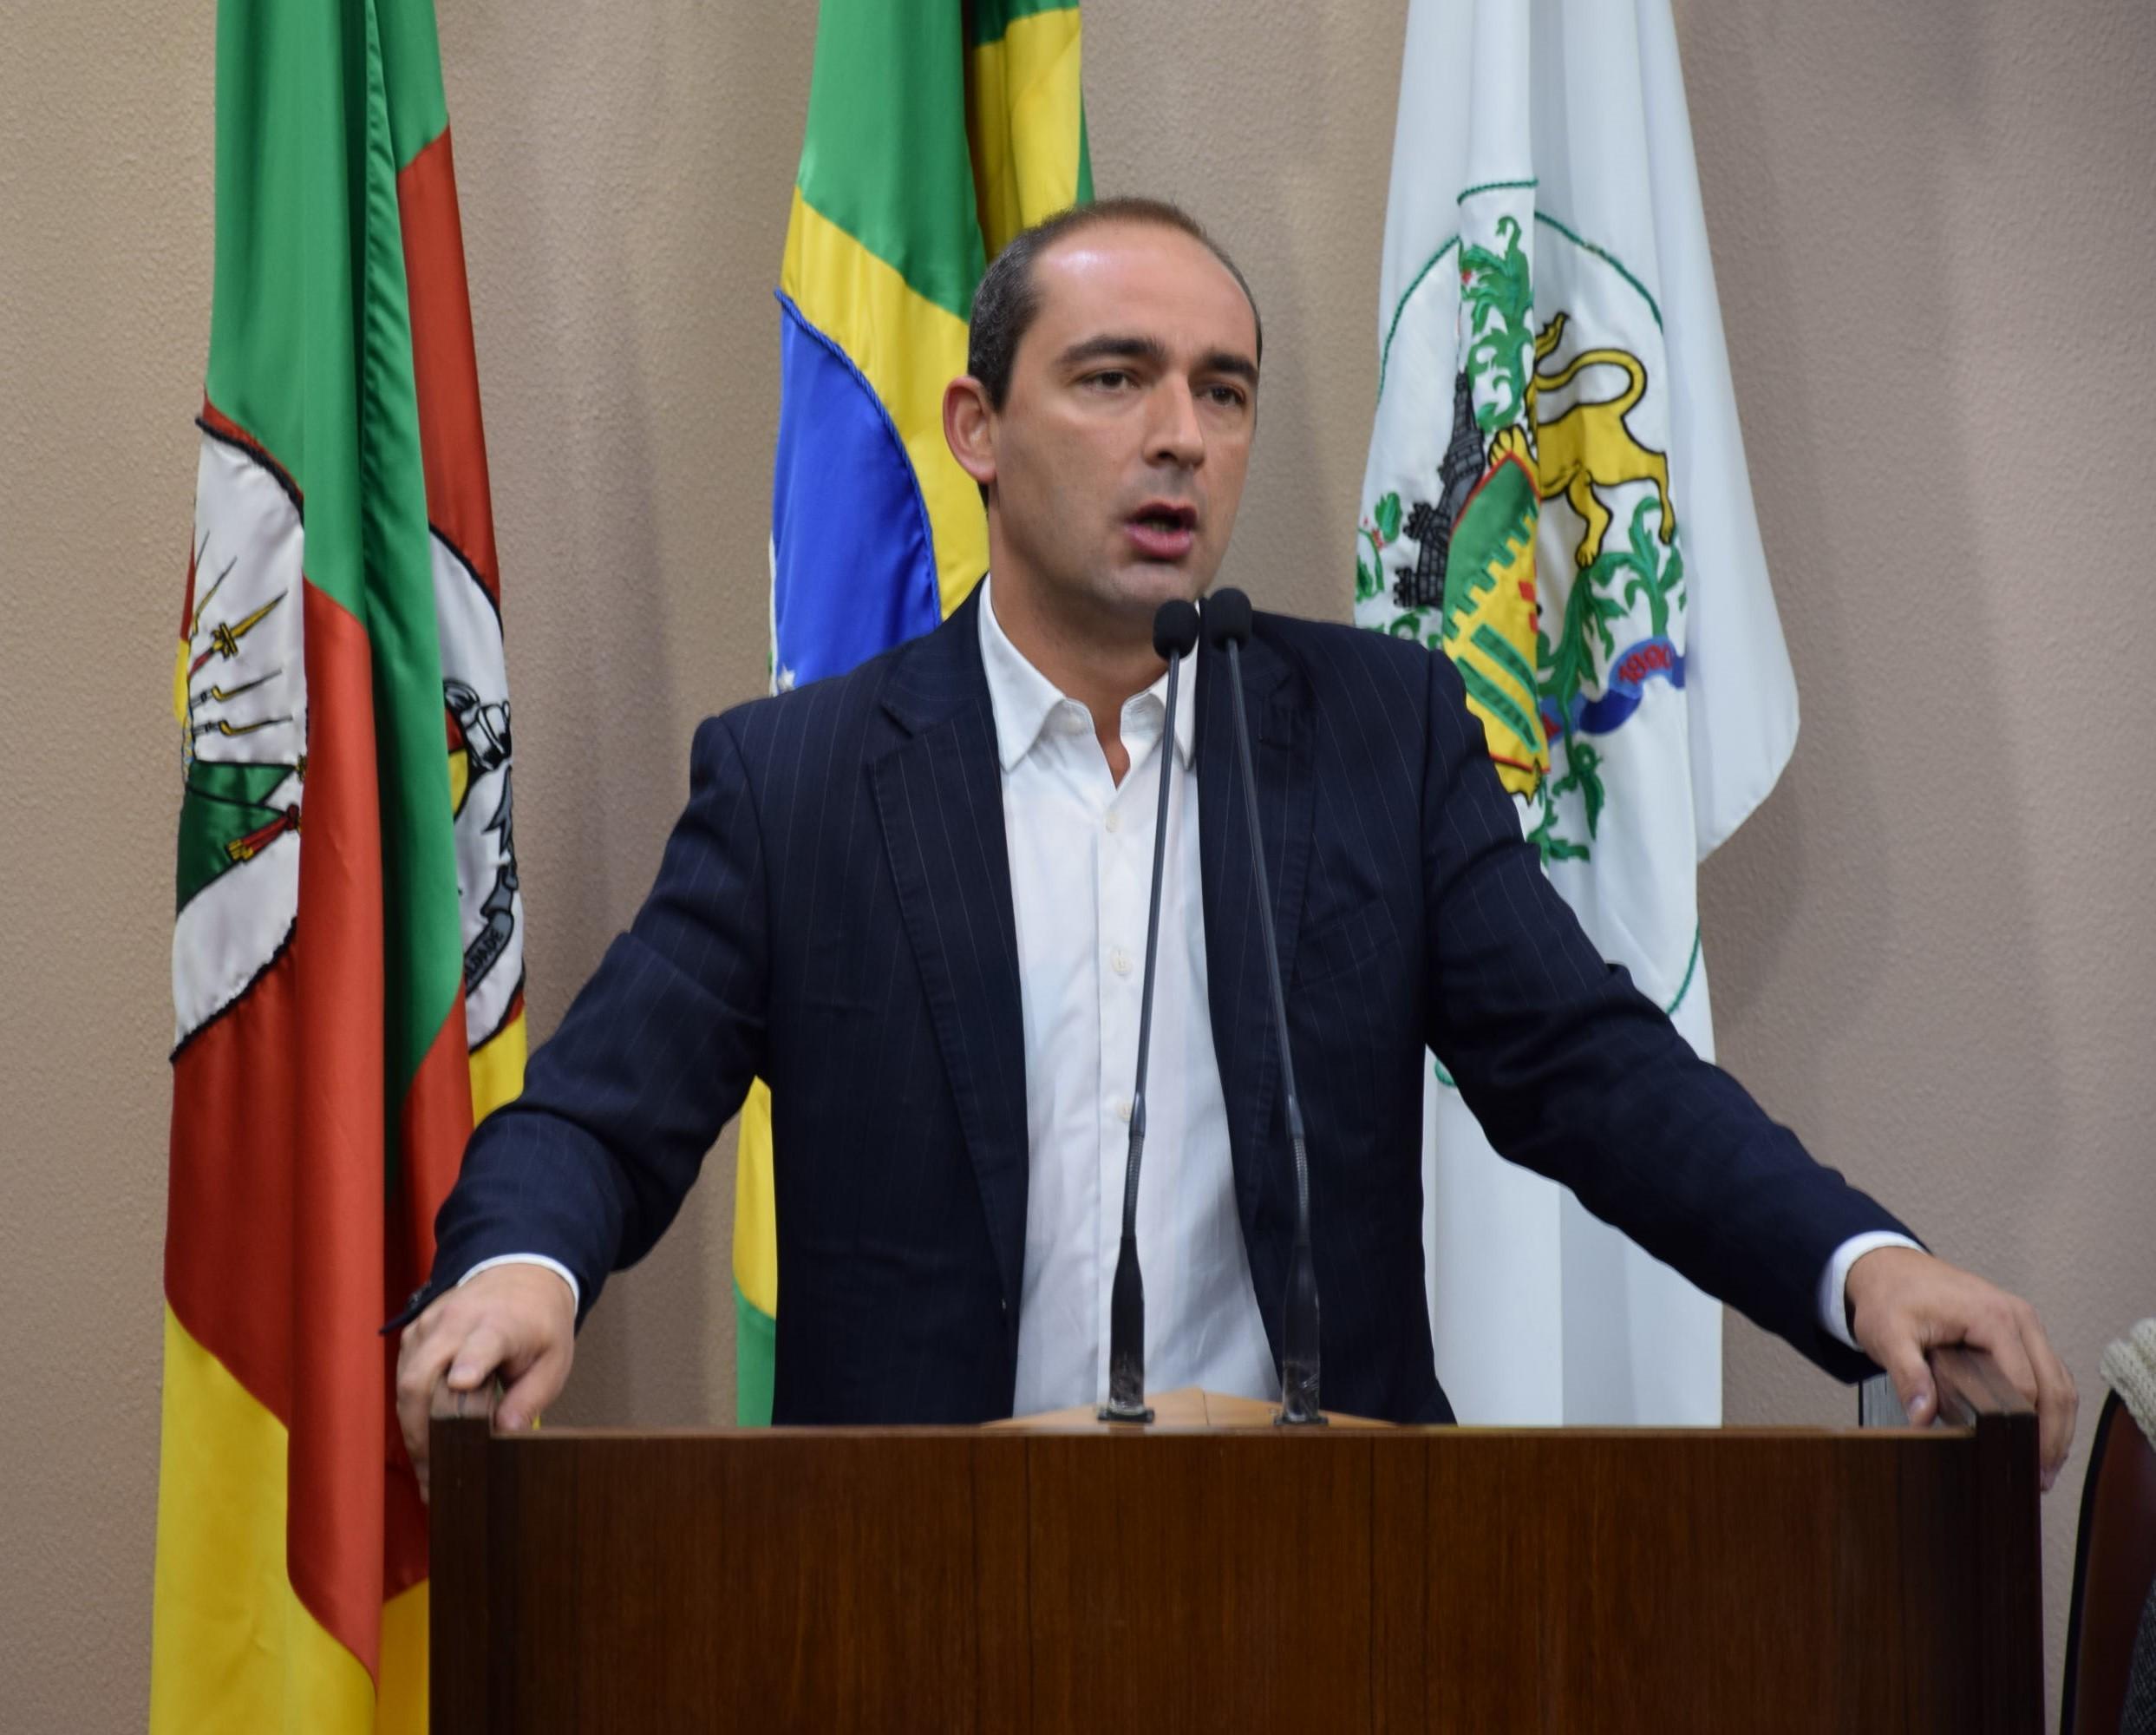 Beltrão apresenta projeto para cassar alvará de estabelecimentos com combustível adulterado 